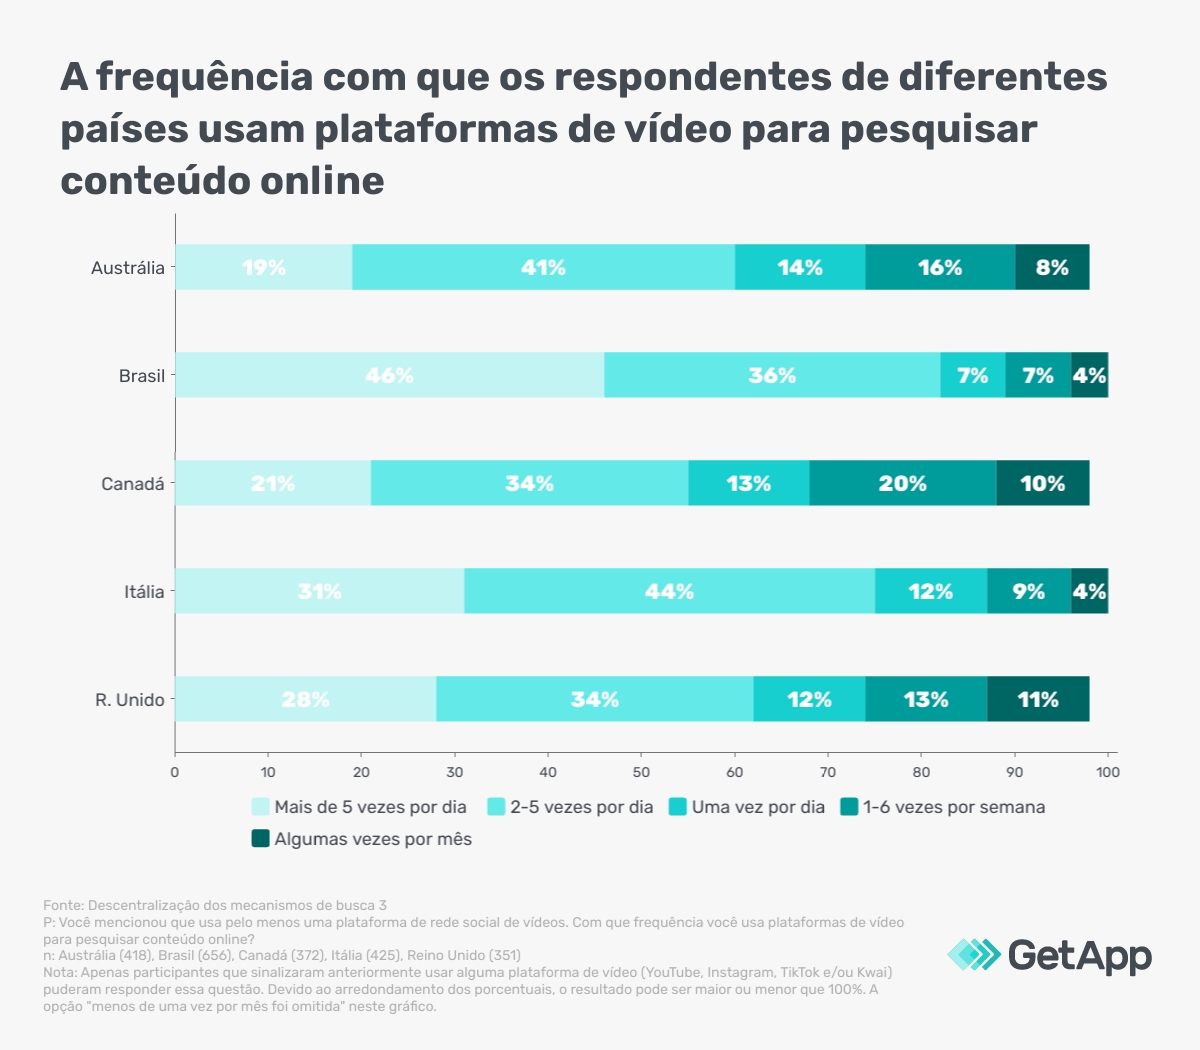 Brasil tem a maior frequência de busca por conteúdo online